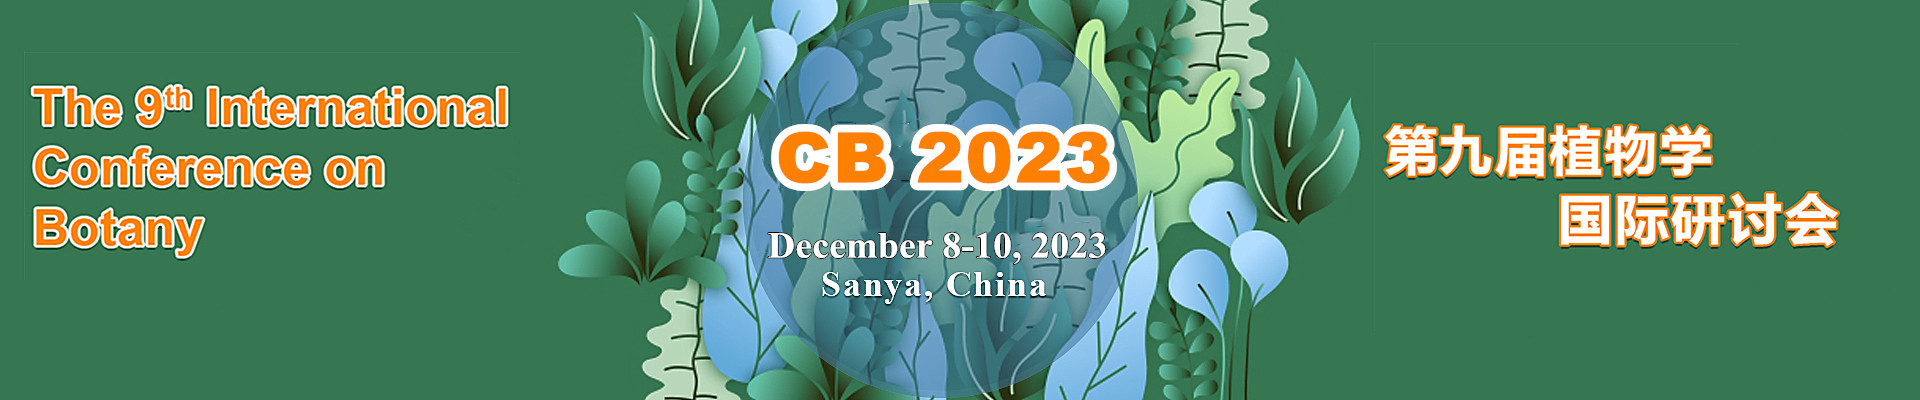 第九届植物学国际研讨会(CB 2023)